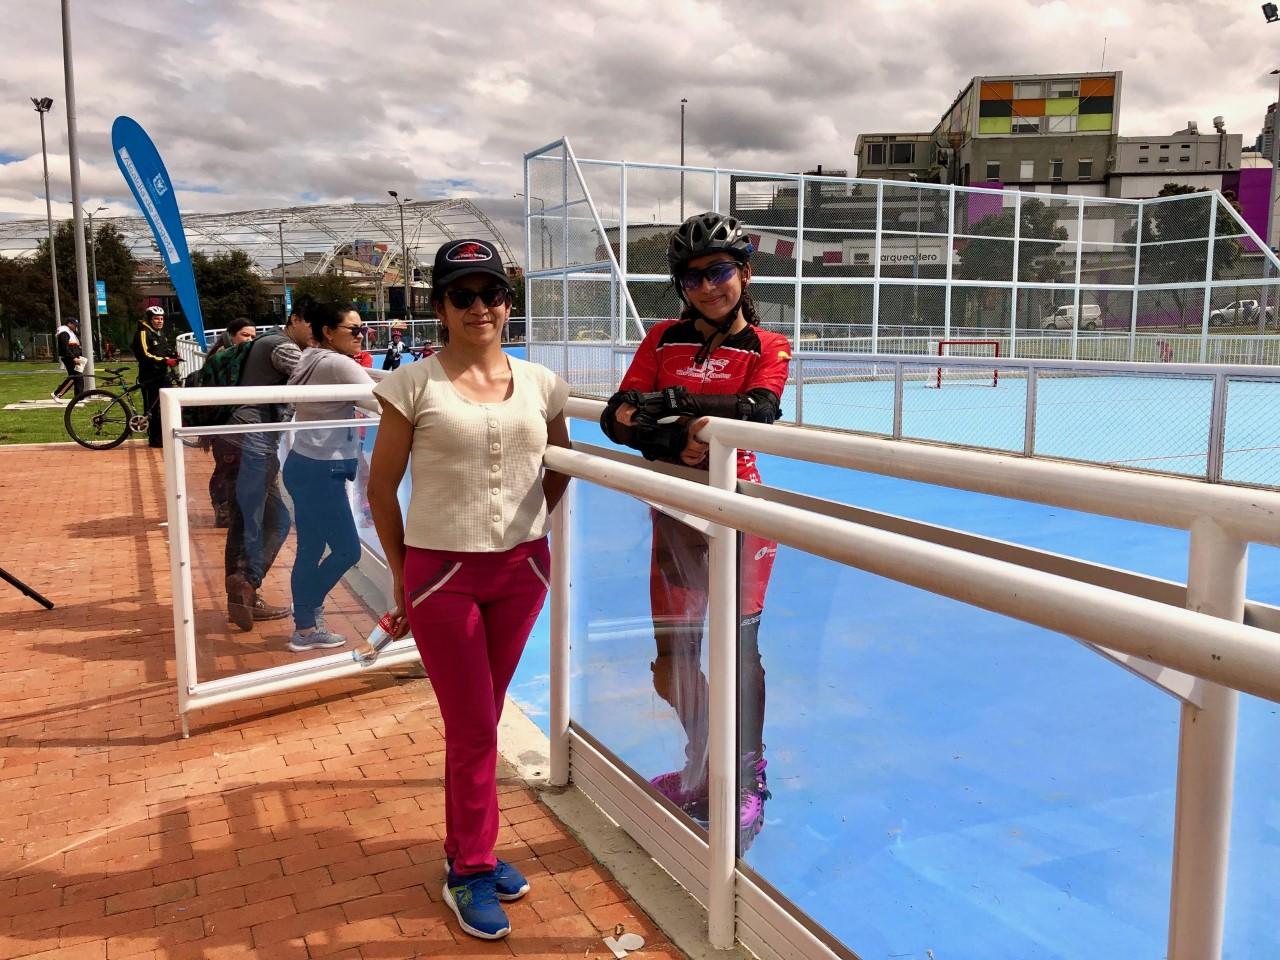 Imagen de Daniela con su mamá, posando en la pista de patinaje